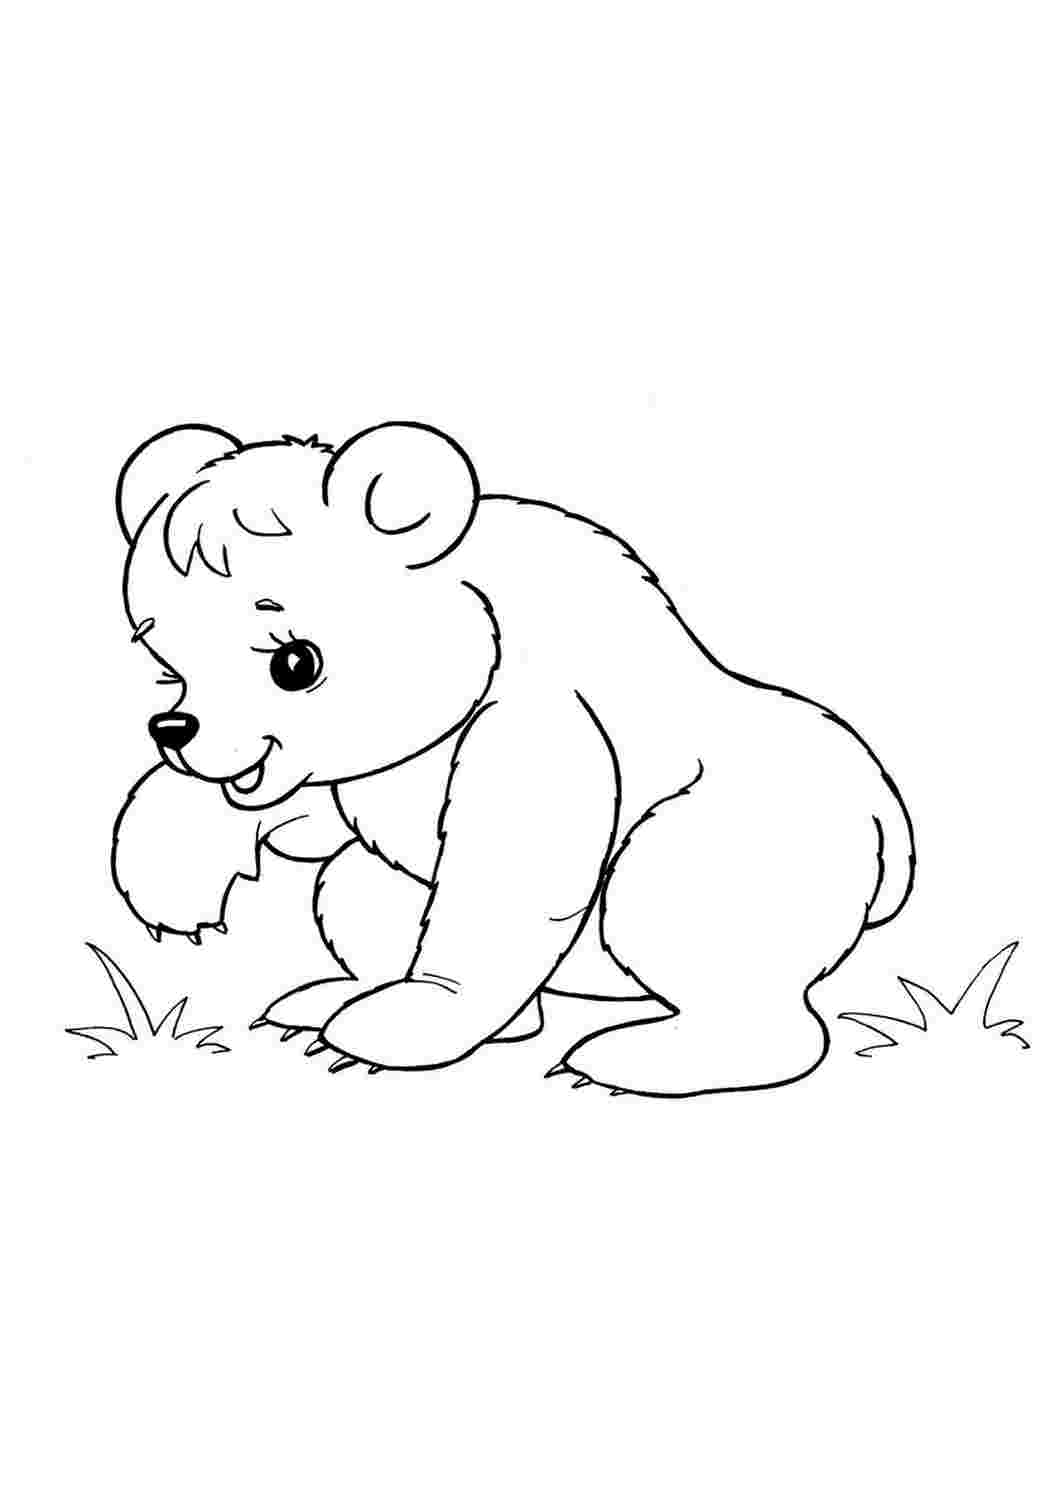 Распечатать раскраску диких животных. Раскраска. Медвежонок. Медведь раскраска. Раскраски животных для детей. Медведь раскраска для детей.